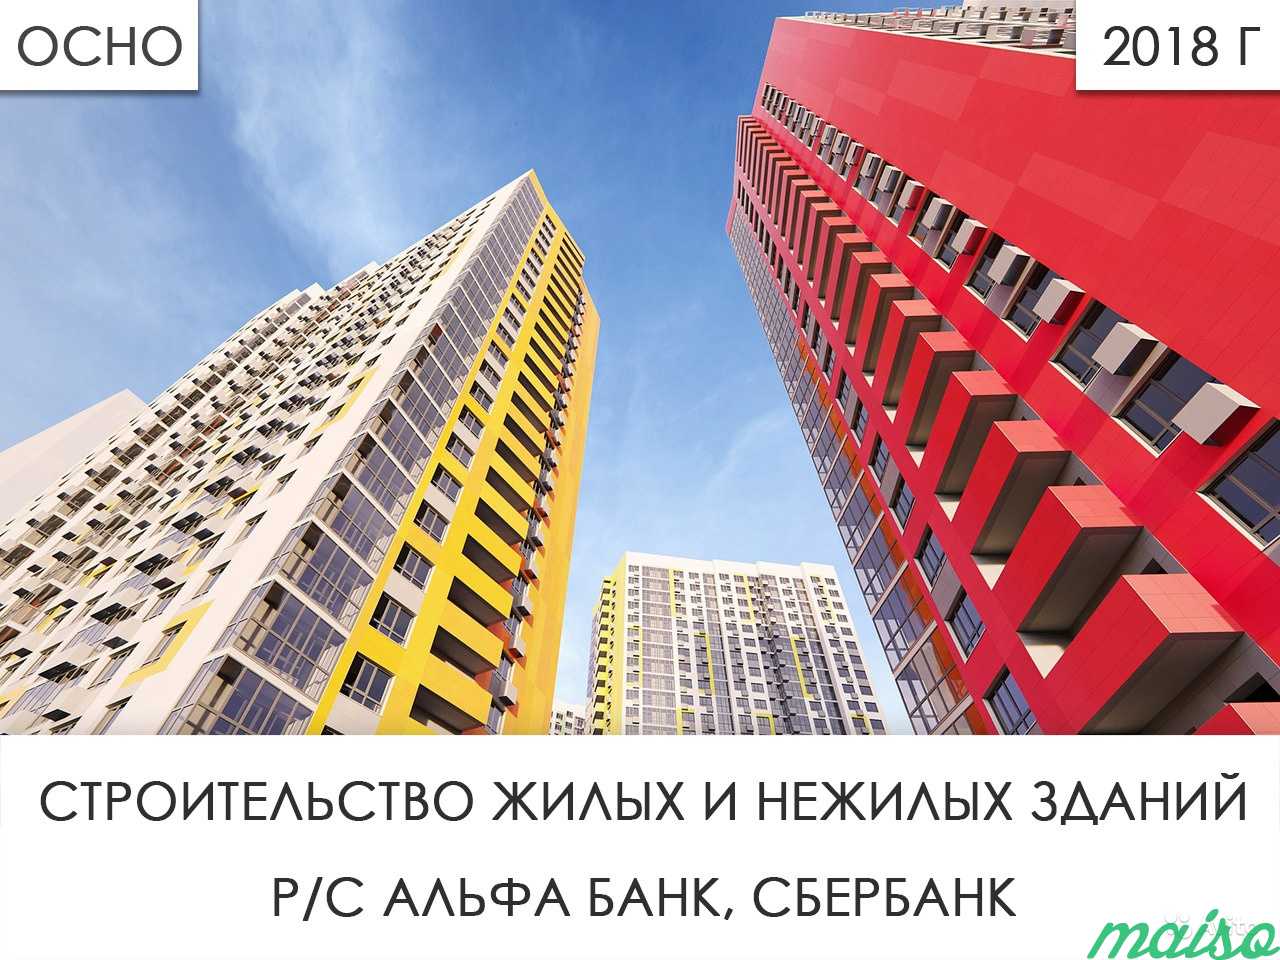 Ооо 2018 г. (строительство жилых и нежилых зданий) в Москве. Фото 1